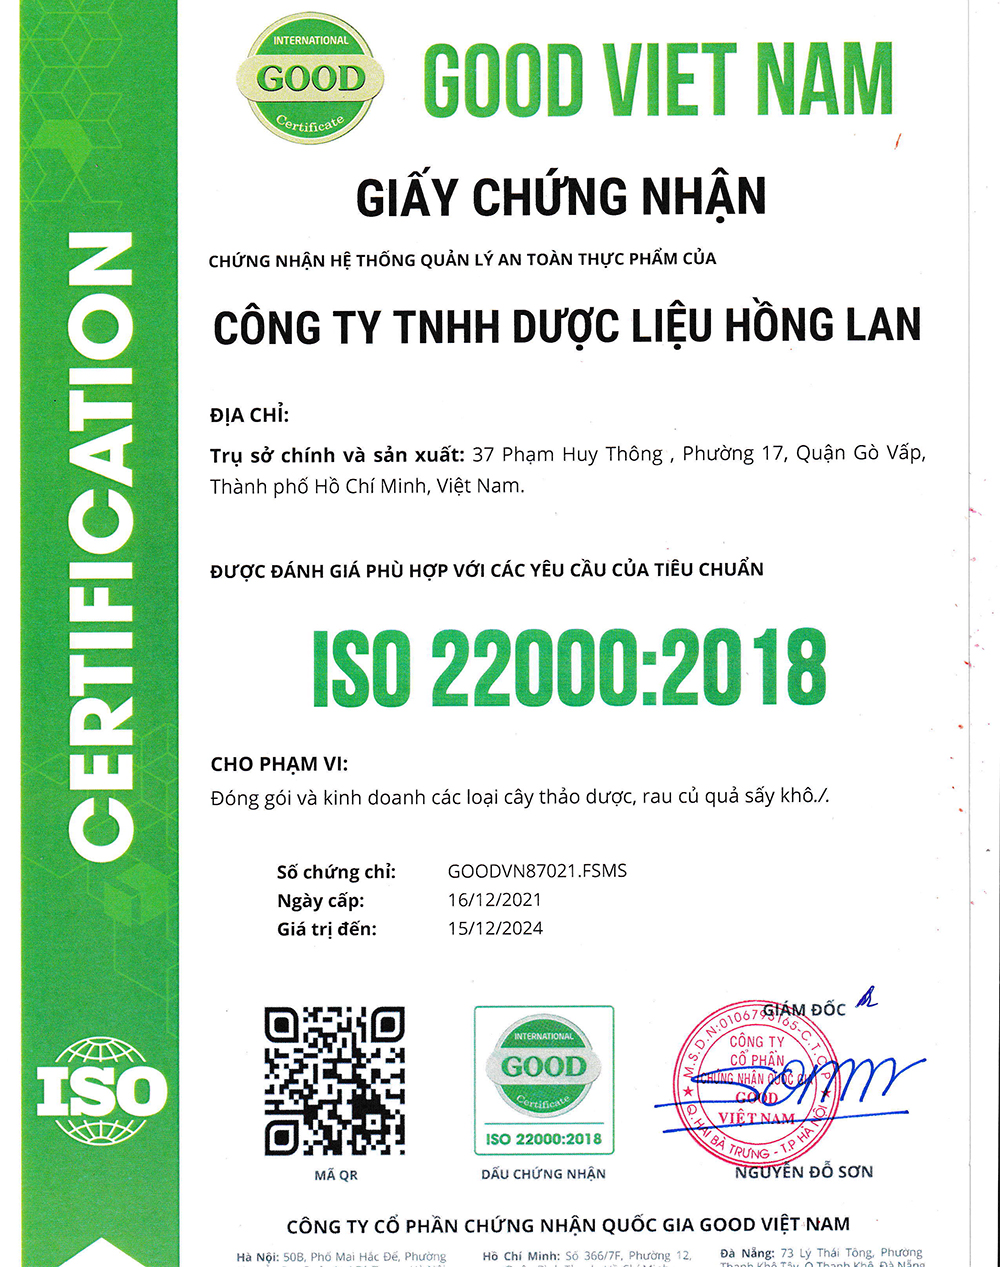 Trà túi lọc Cây Kim Tiền Thảo được sản xuất bởi Công ty TNHH Dược Liệu Hồng Lan theo hệ thống quản lý an toàn thực phẩm ISO 22000:2018 được cấp bởi công ty cổ phần chứng nhận Quốc Gia Good Việt Nam (Good Viet Nam Certification Joint Stock Company)